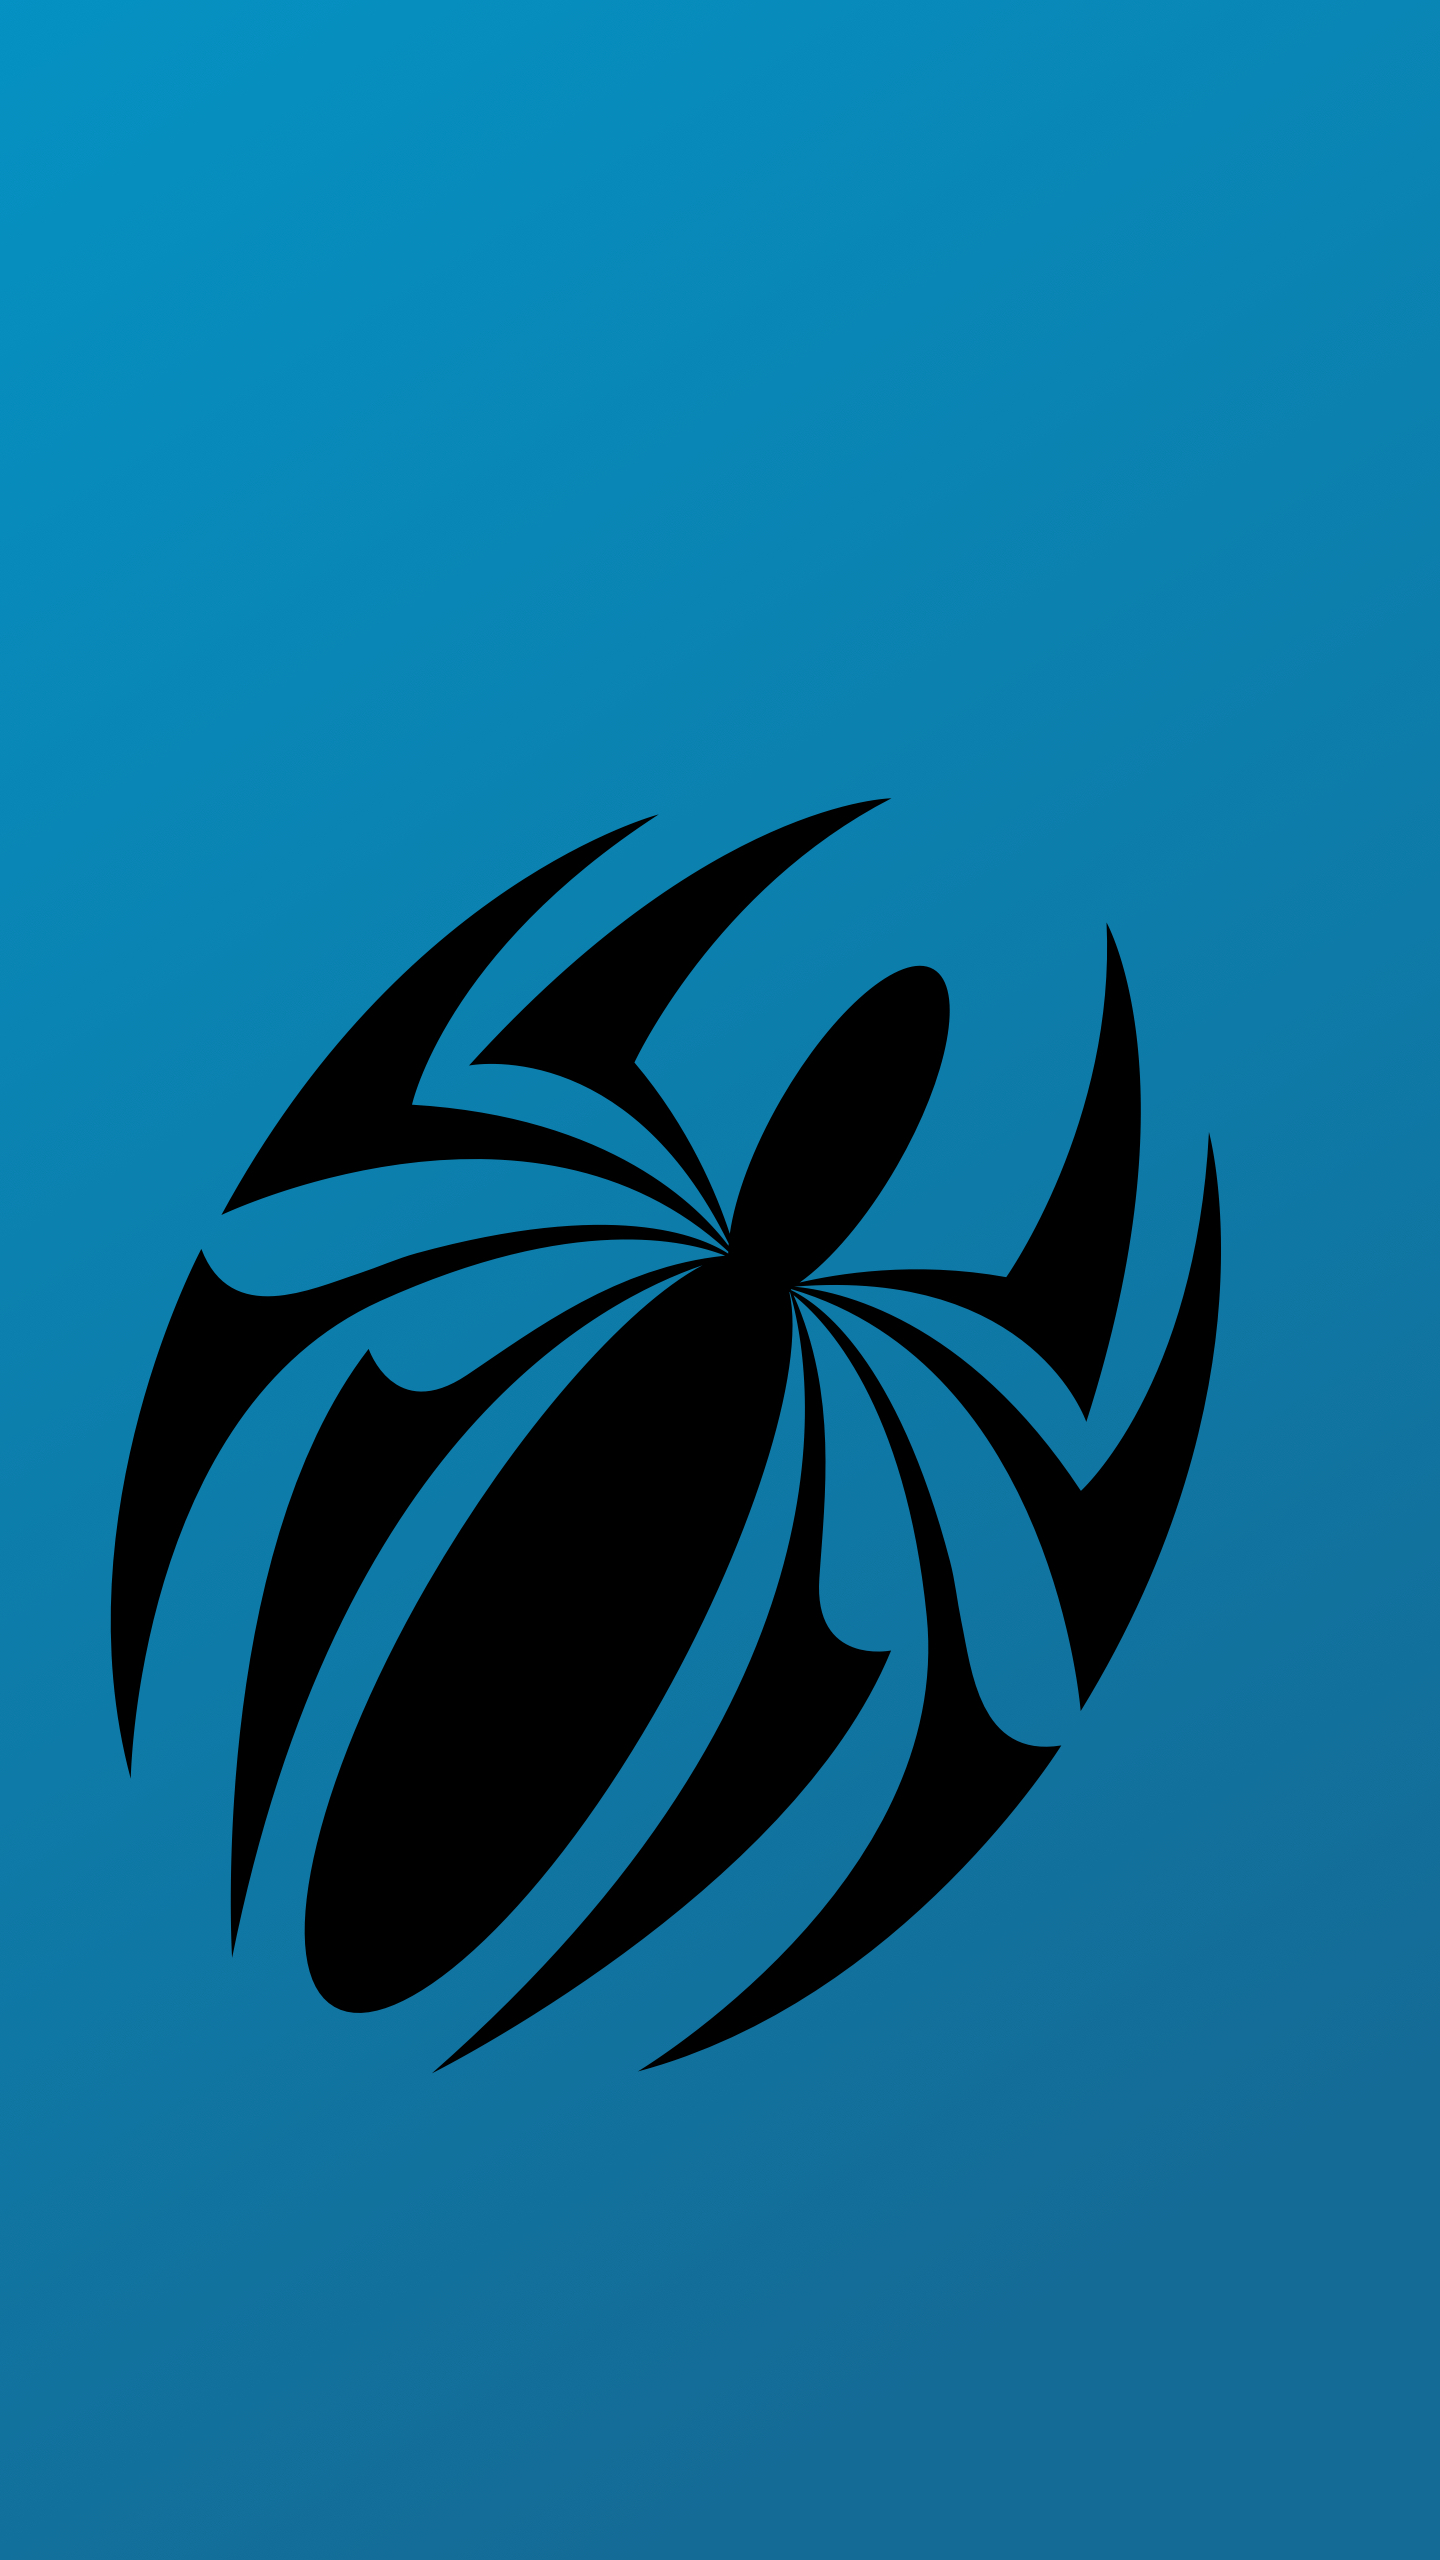 Spider Man Scarlet Spider Logo - HD Wallpaper 